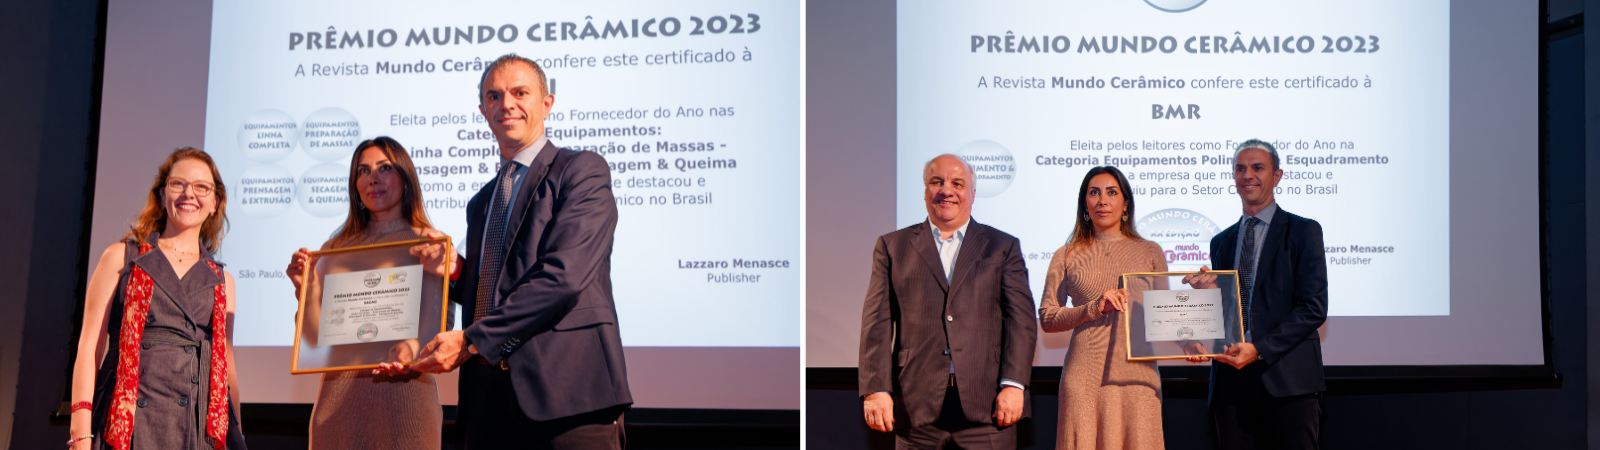 SACMI do Brasil receives Mundo Ceramico award